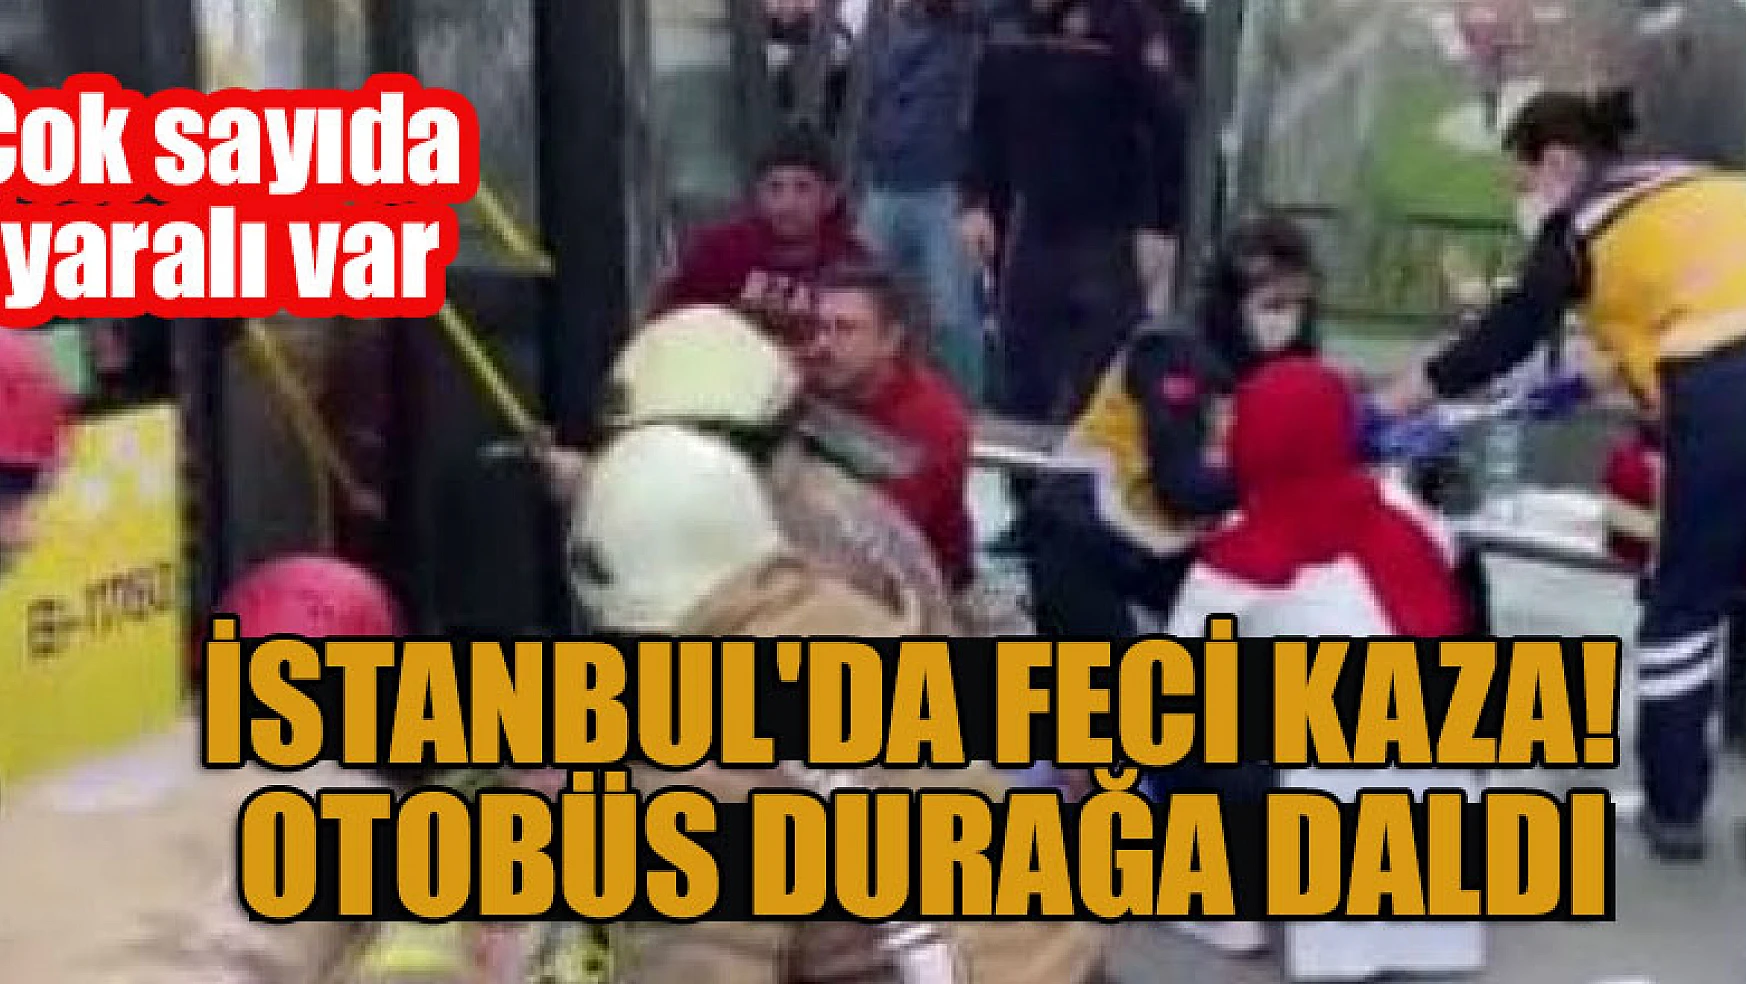 İstanbul'da feci kaza! Otobüs durağa daldı... Çok sayıda yaralı var